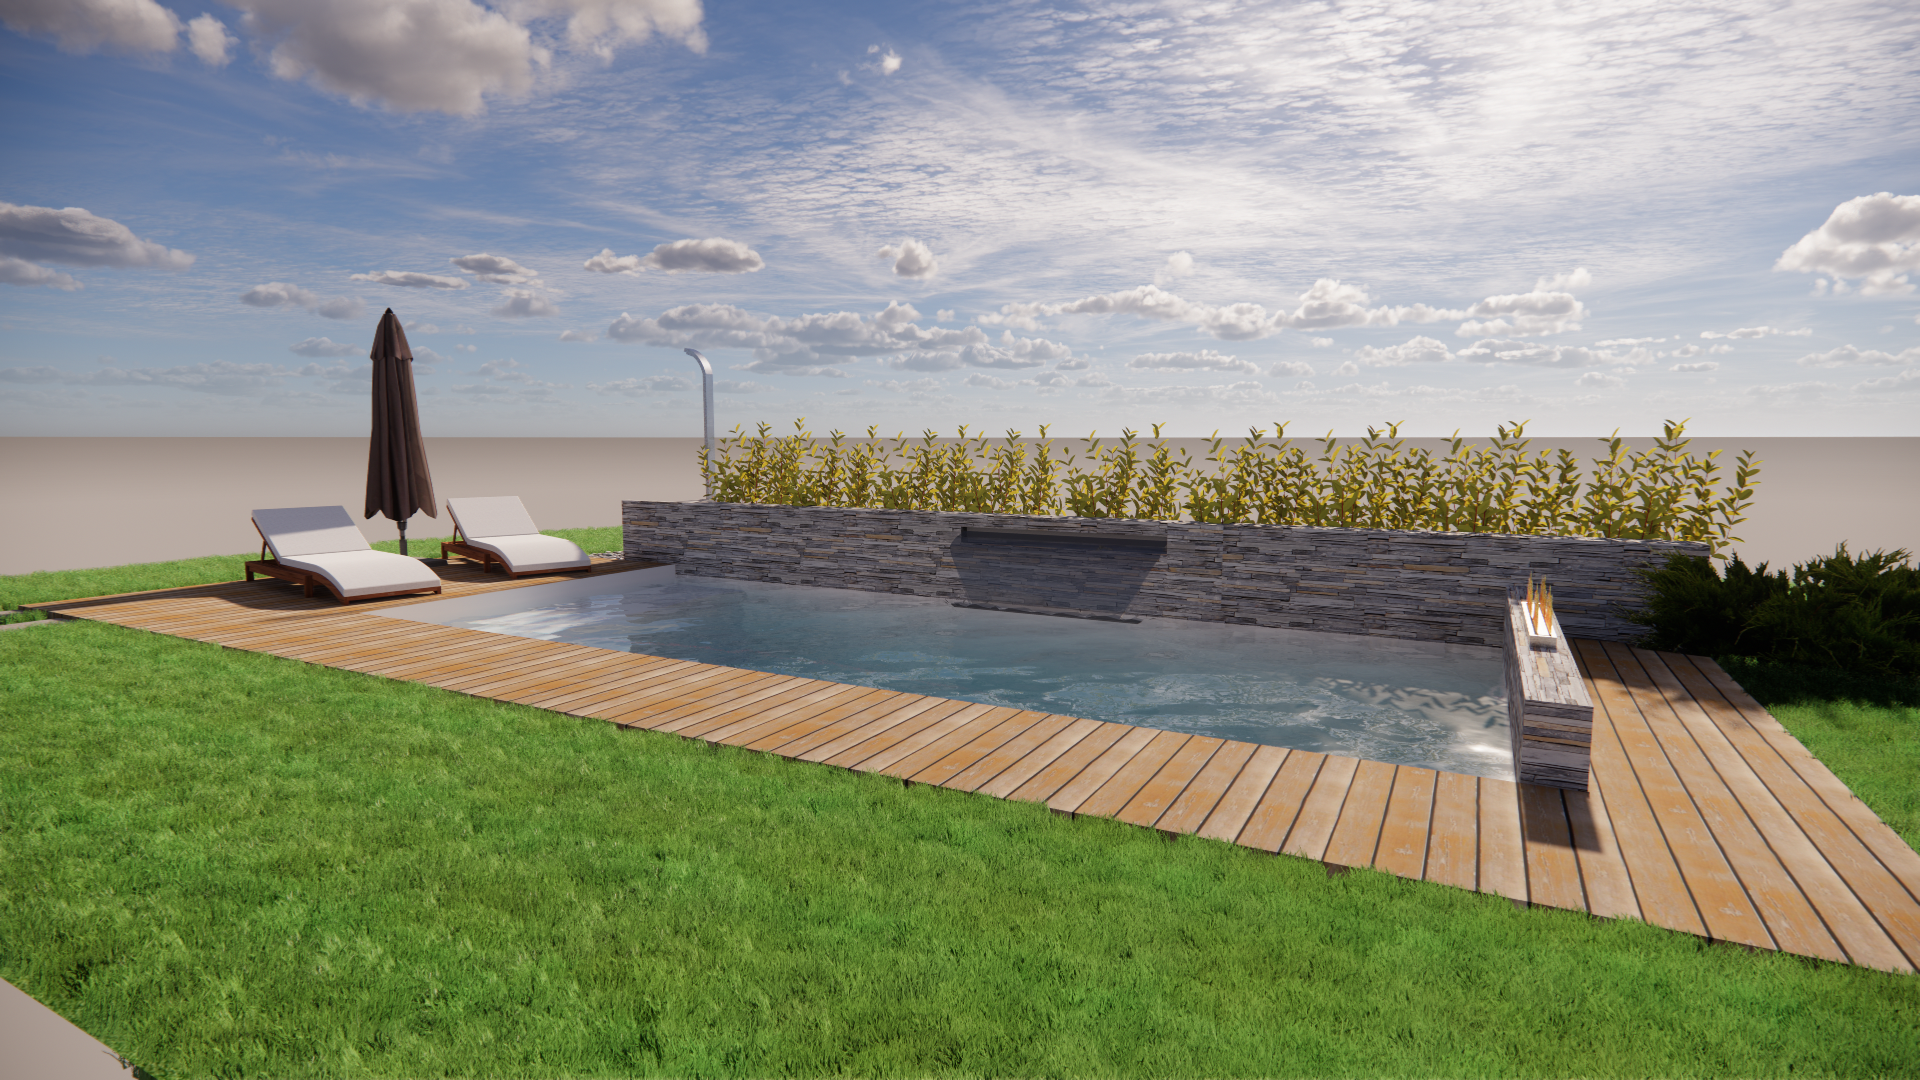 progettazione personalizzata piscina 3x7m con spiaggetta, cascata, focolaio  e doccia solare, progetto esclusivo ad ogni situazione la giusta soluzione.